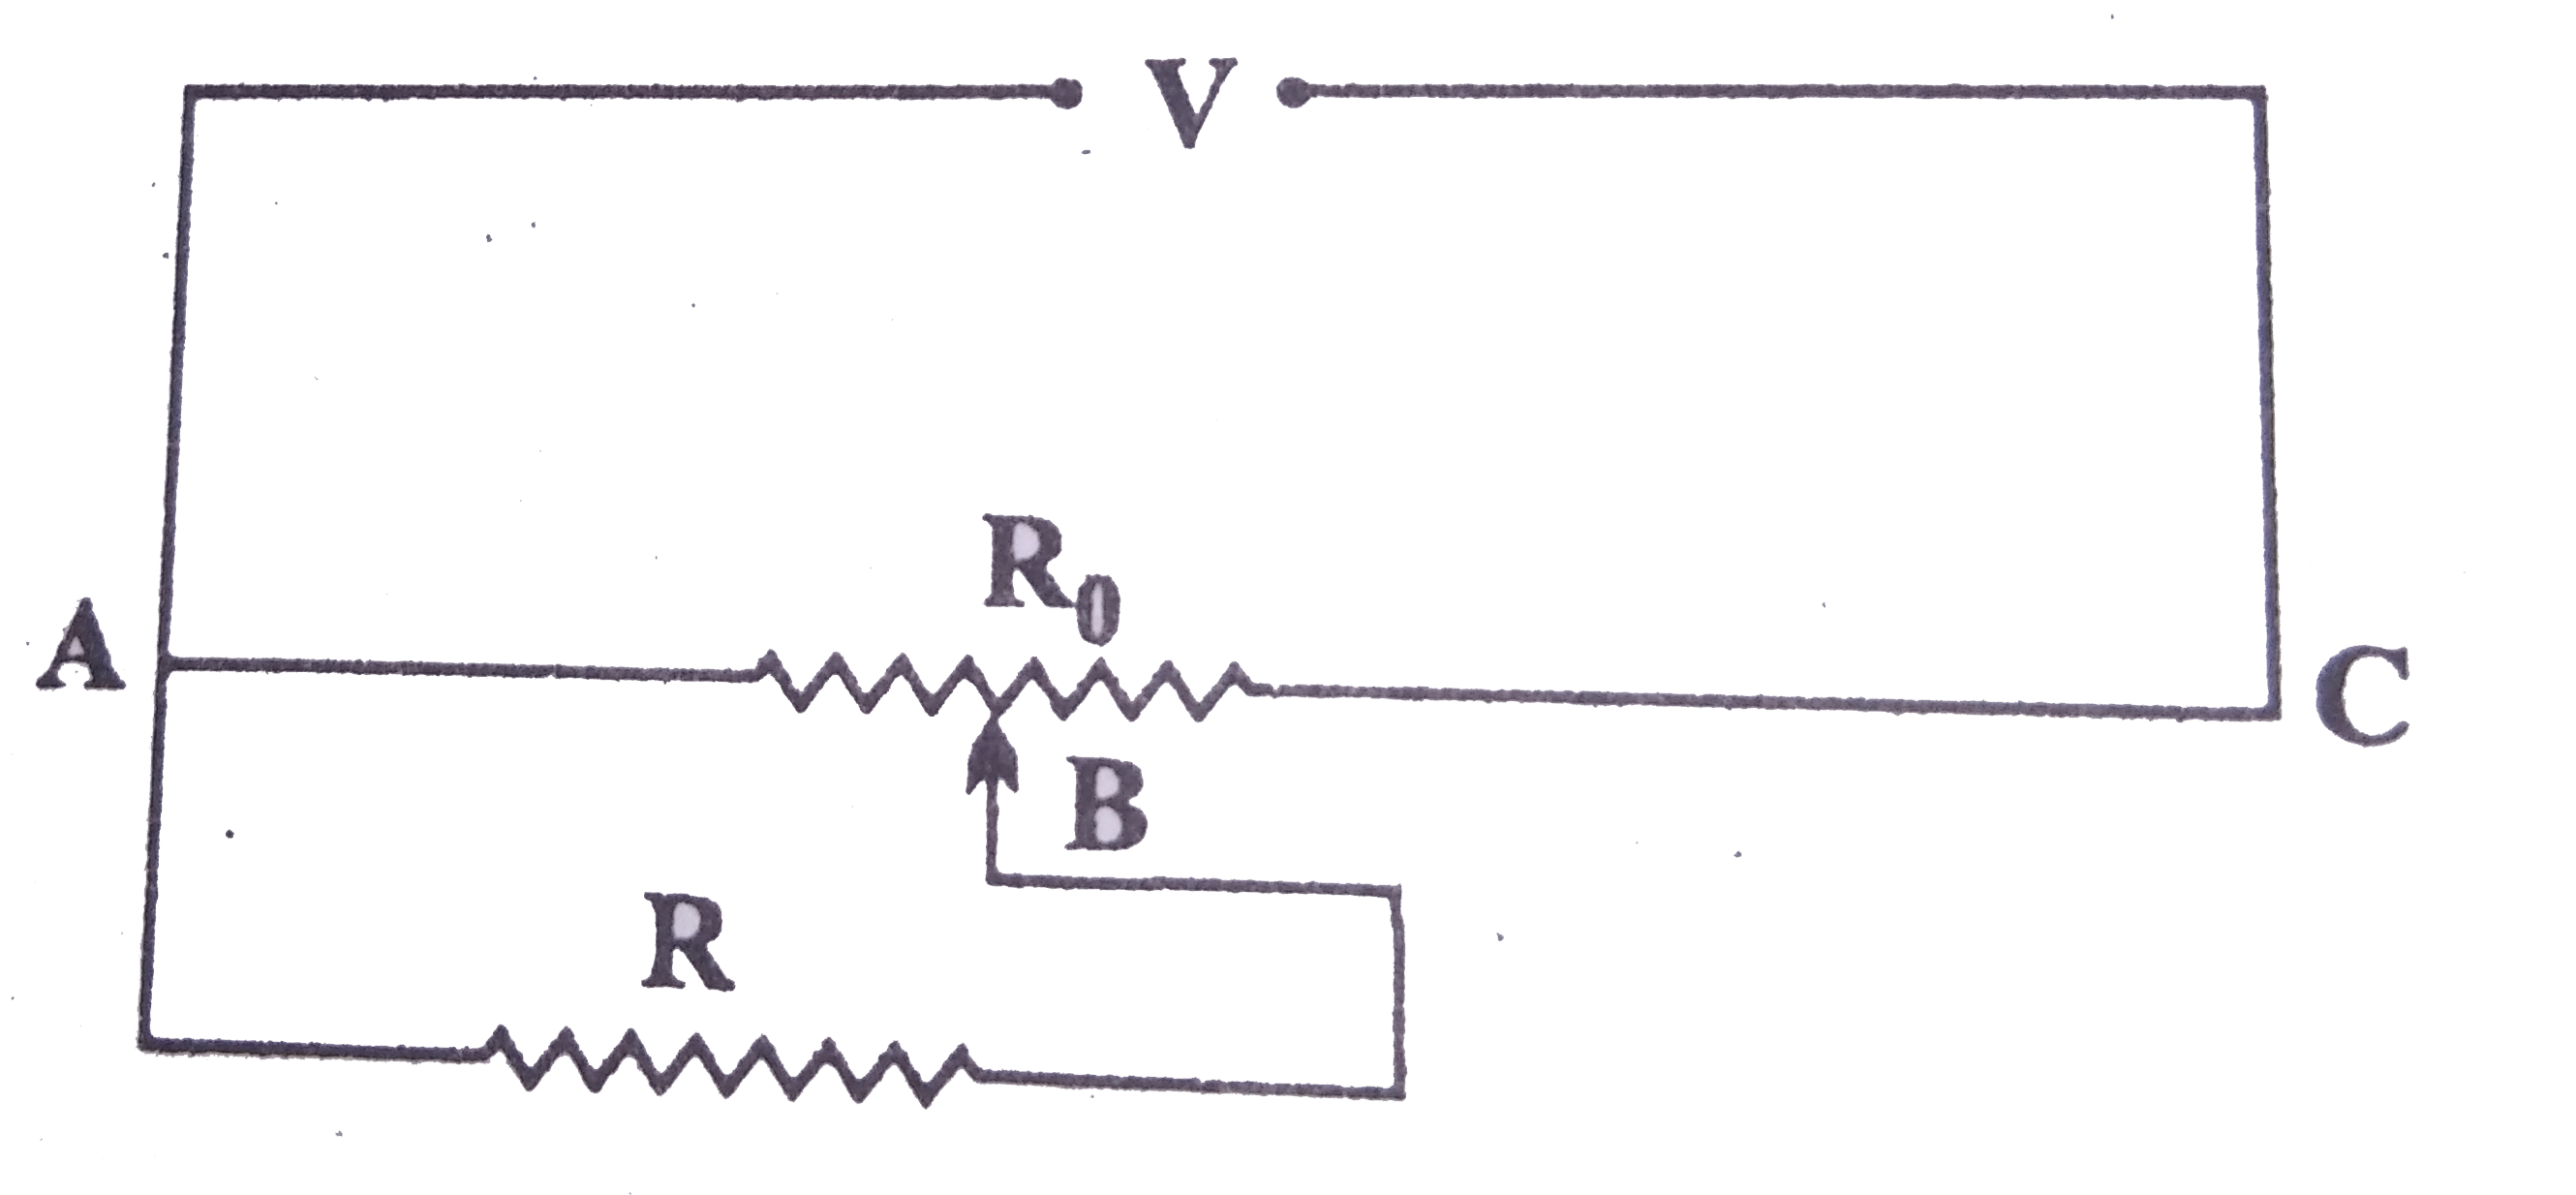 ROmega का कोई प्रतिरोध एक विभवमापी से विद्युत धारा प्राप्त कर रहा है। विभवमापी का कुल प्रतिरोध R(0)Omega है। विभवमापी को वोल्टता V की आपूर्ति की गई है। जब सर्पी सम्पर्क (सरकने वाला भाग या स्लाइड) विभवमापी के तार के मध्य में हो R के सिरों पर वोल्टता के लिए व्यंजक प्राप्त कीजिए।